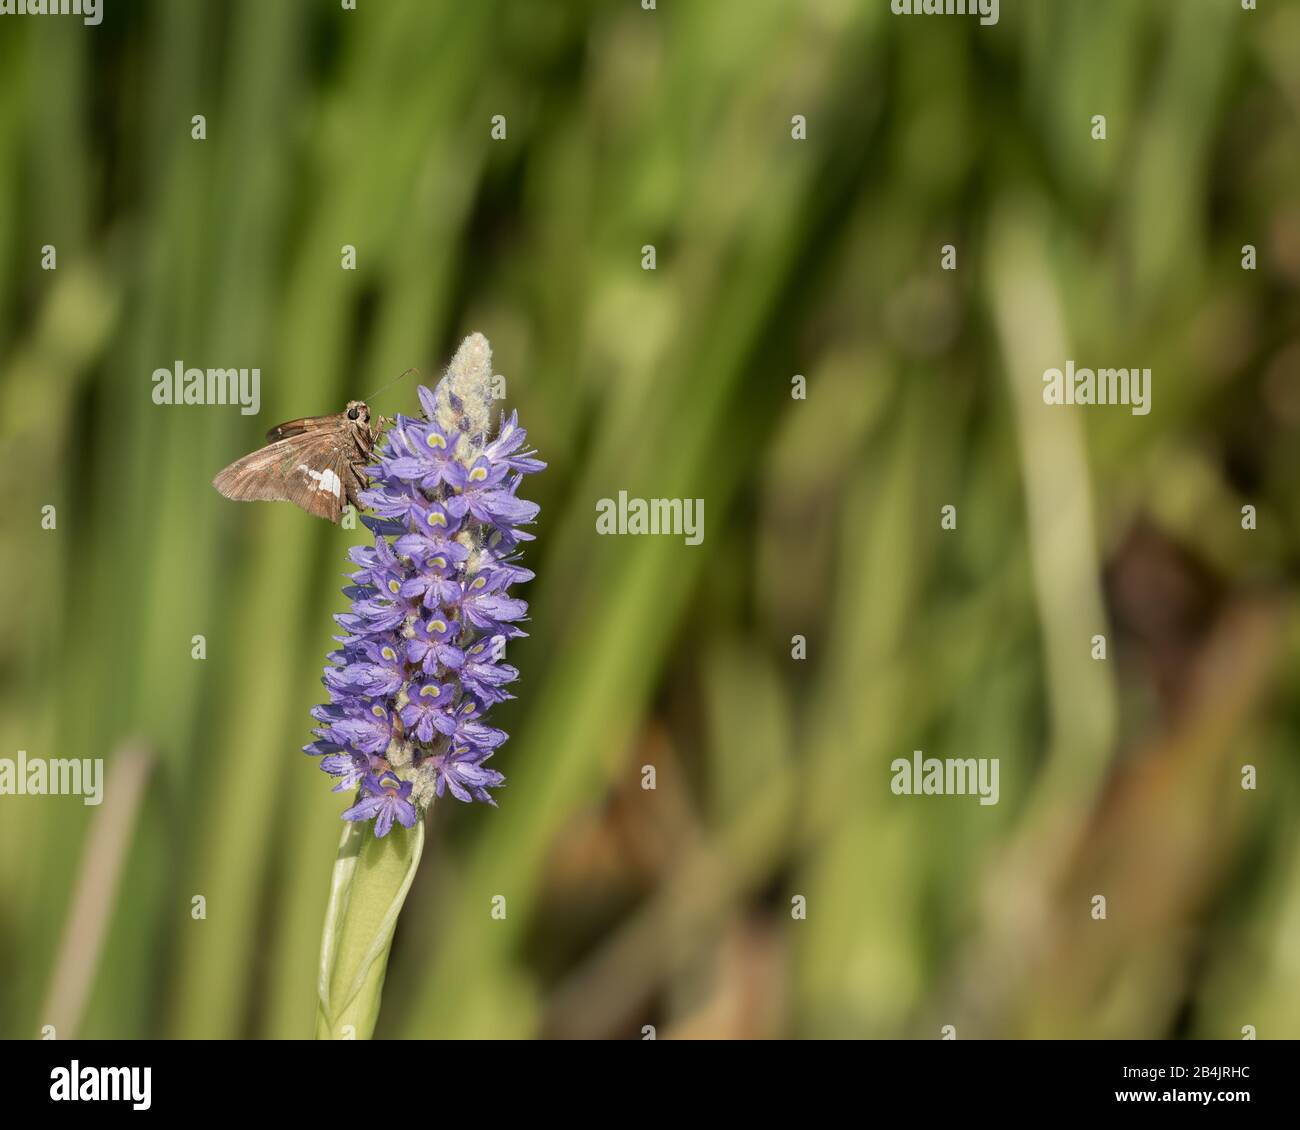 Image de la fleur de conée violette avec papillon à pois argentés se nourrissant sur un fond de feuilles vertes floues. Banque D'Images